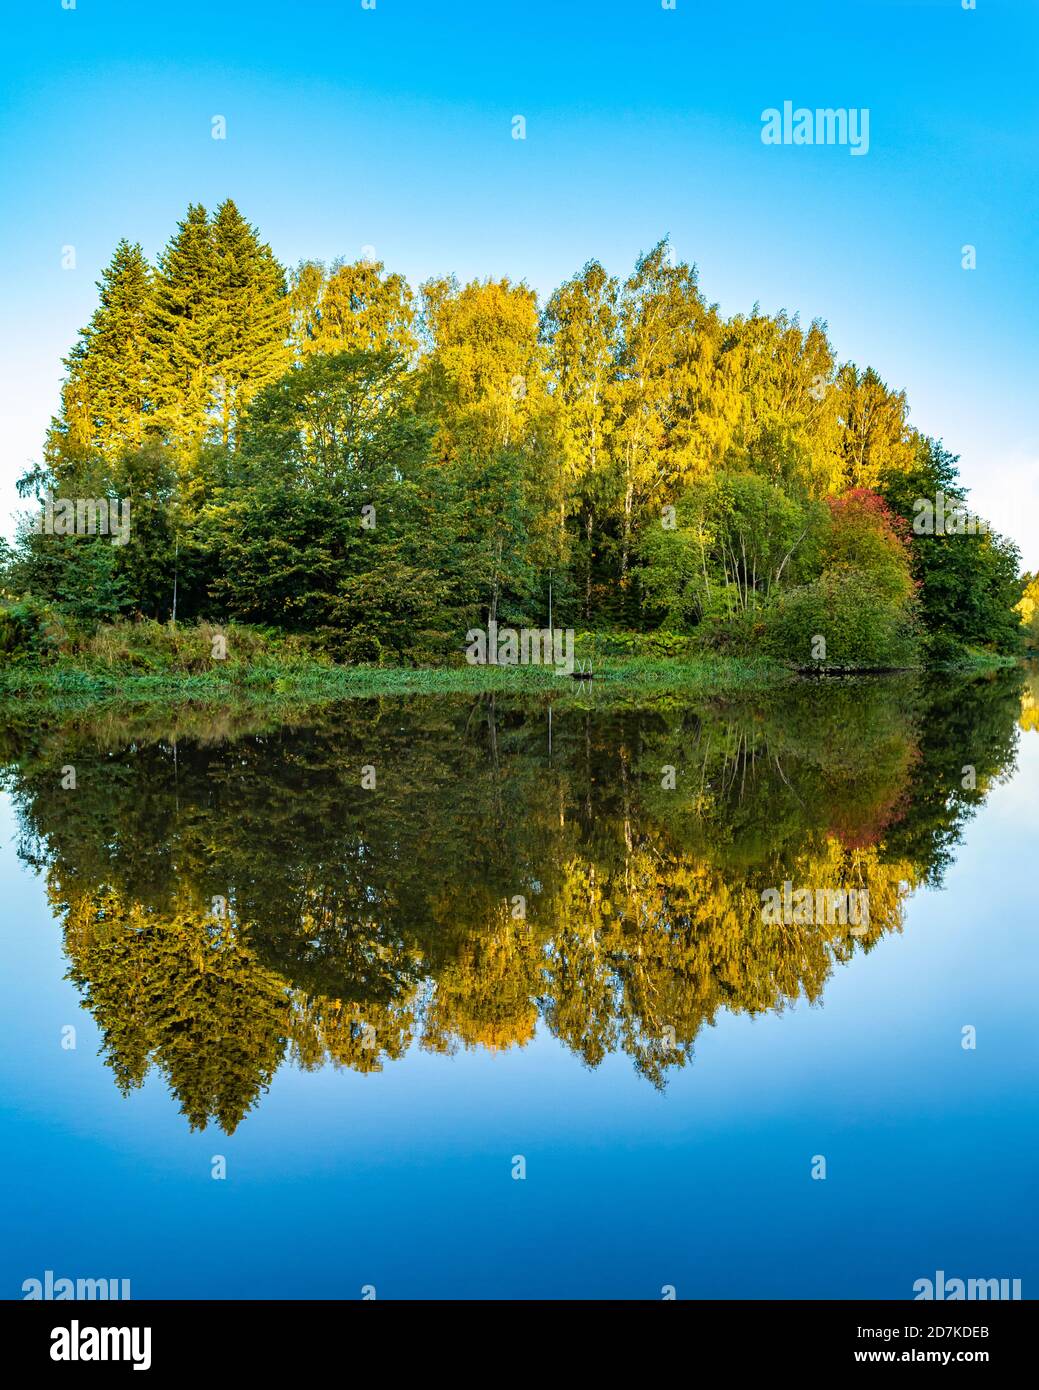 Herbstlandschaft. Bäume reflektieren auf ruhigem blauem Wasser. Farbenfrohe Wälder spiegeln sich im See. Insel. Blauer Hintergrund. Grünes Laub im Morgenlicht. Stockfoto